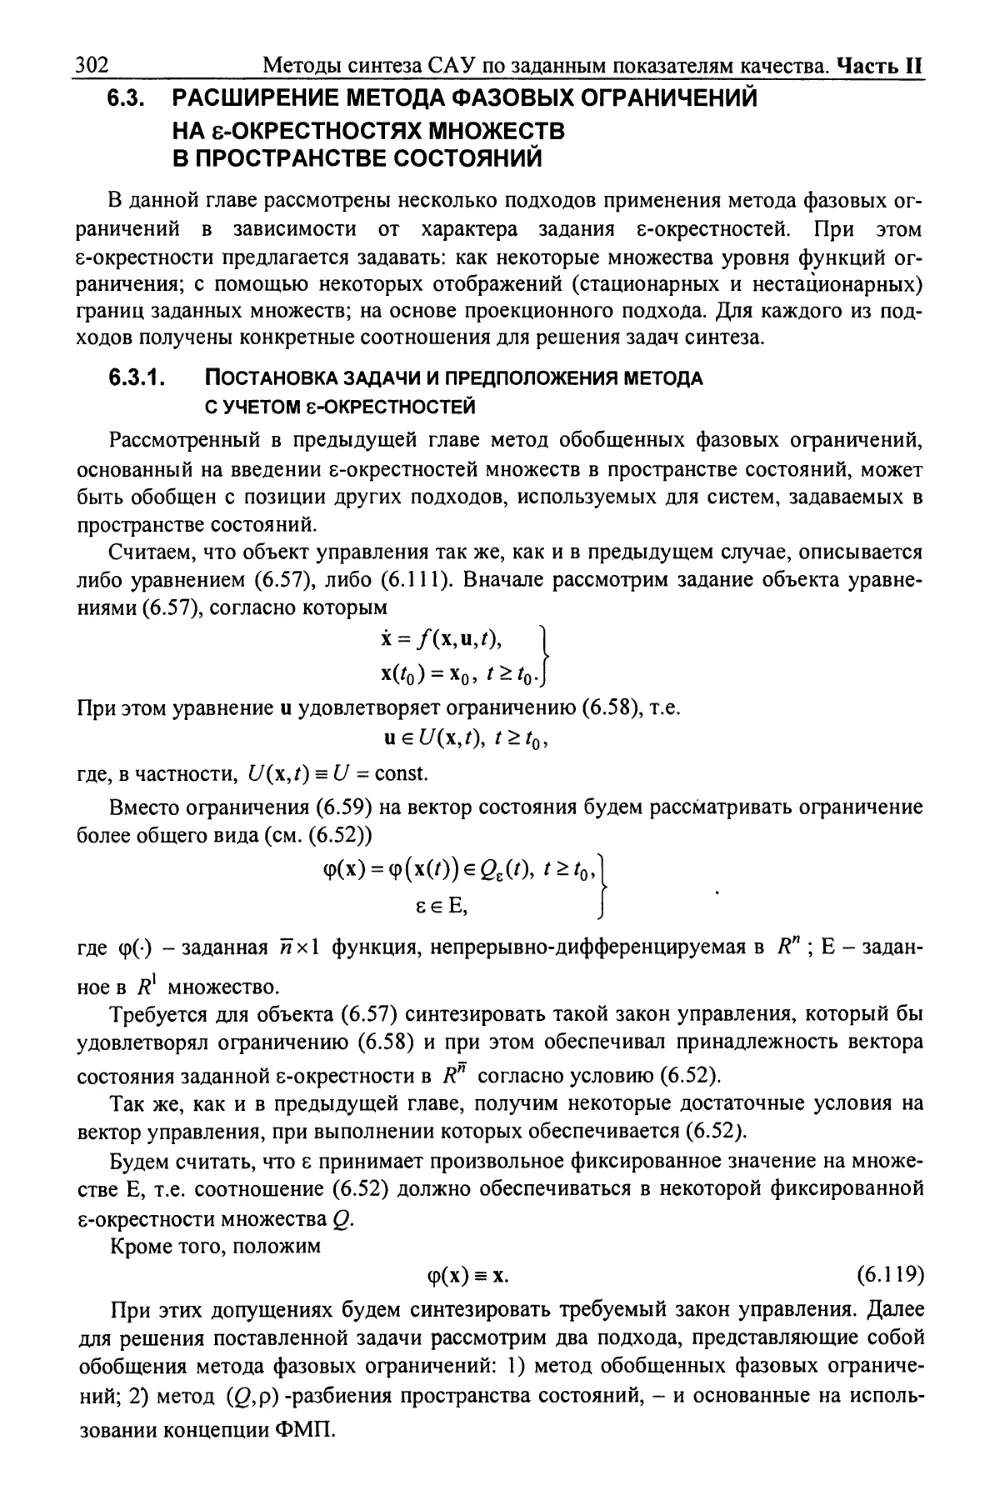 6.3. Расширение метода фазовых ограничений на ε-окрестностях множеств в пространстве состояний